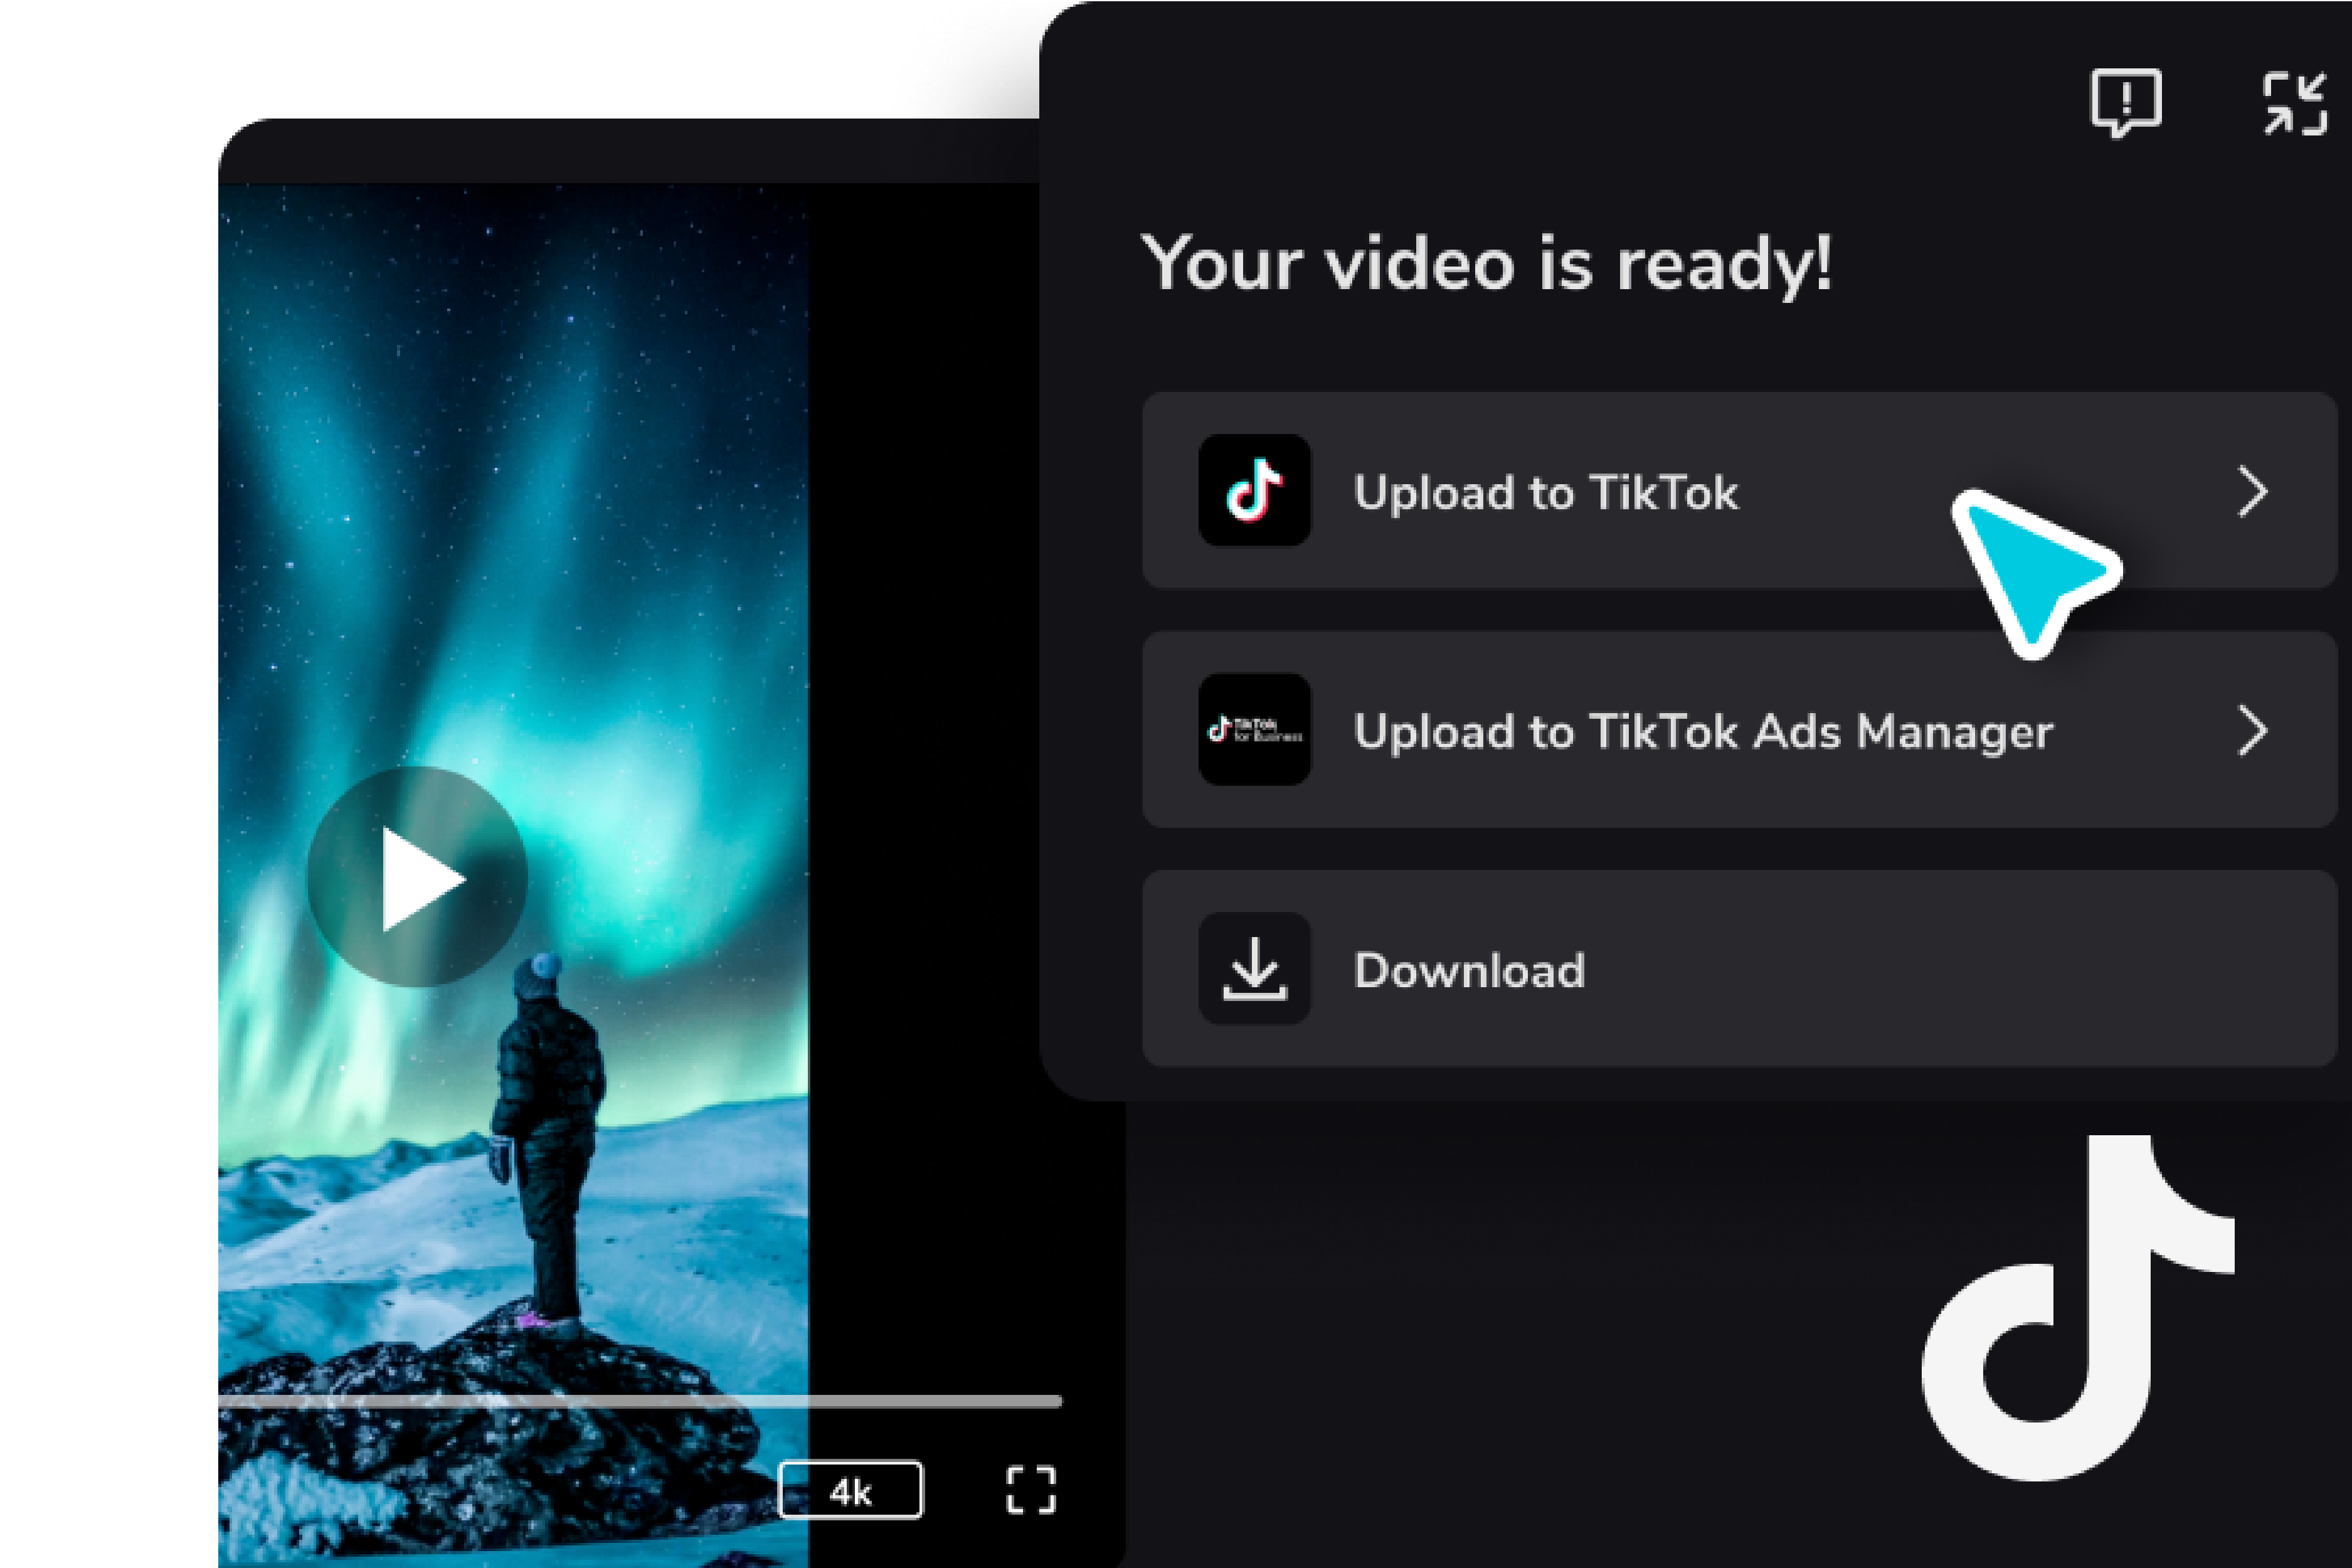 Carregue vídeos diretamente no TikTok ou baixe sem marcas d 'água